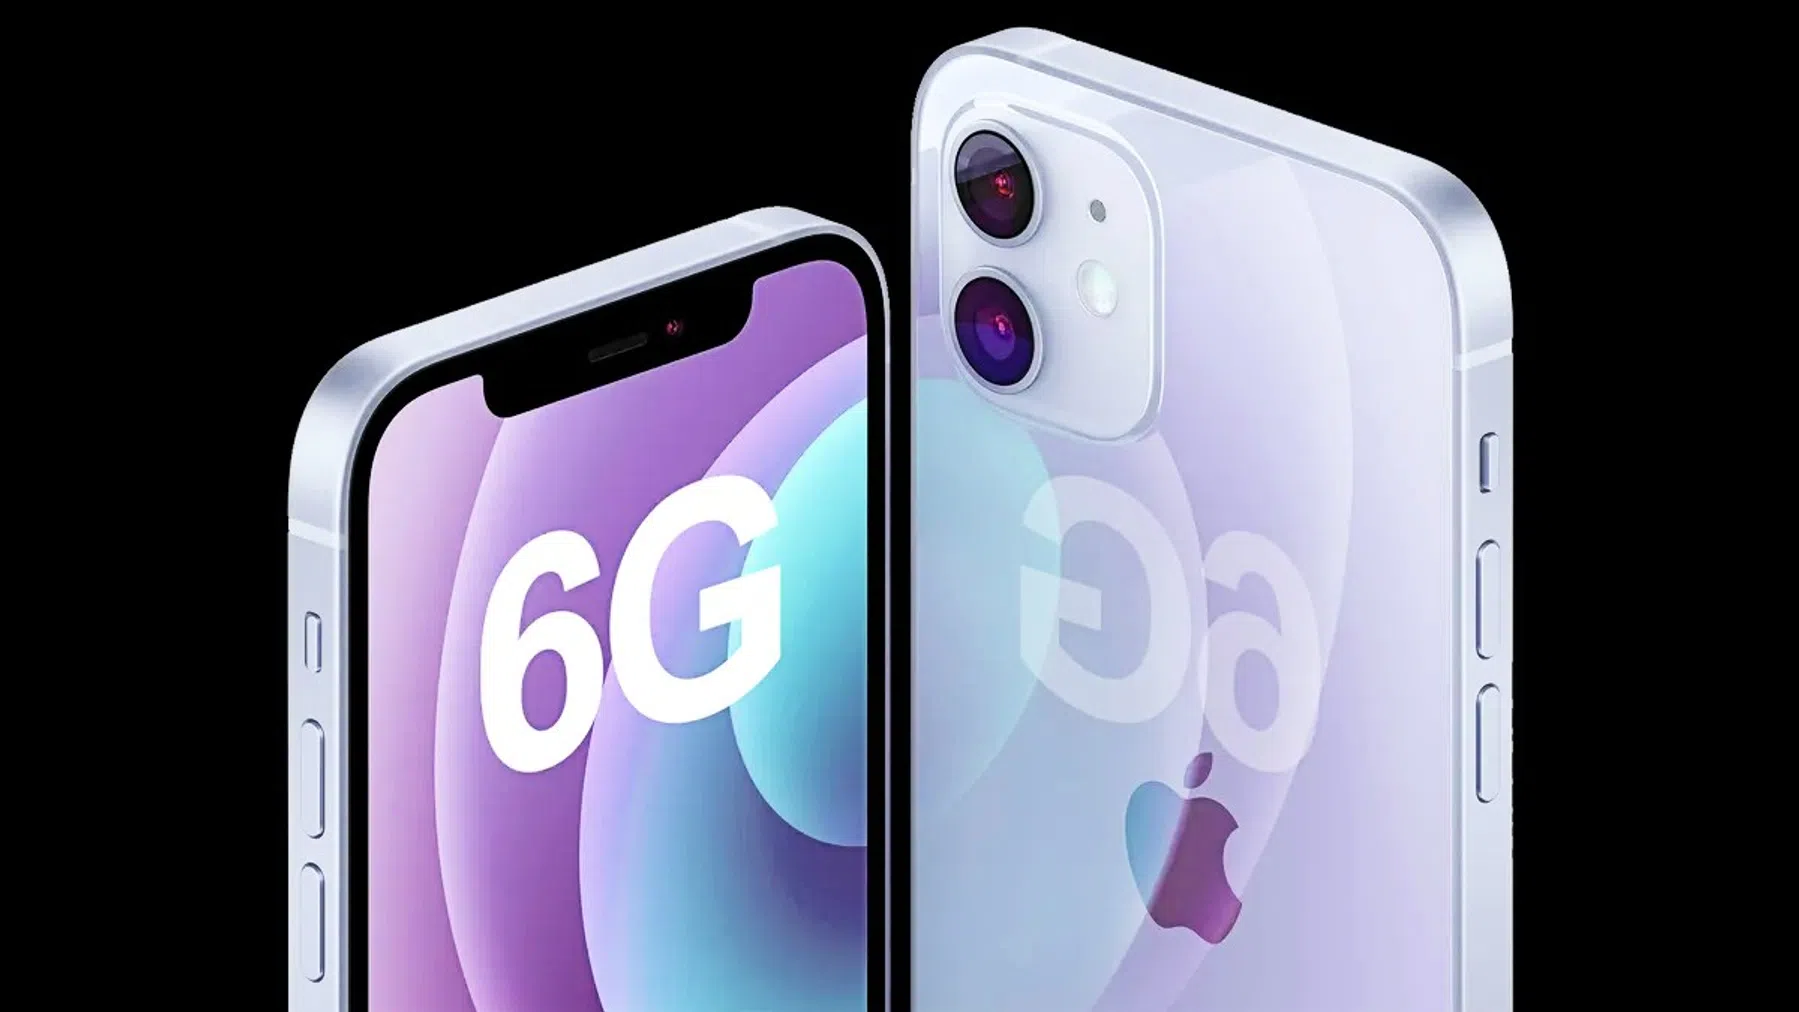 Apple stort zich op 6G: nog sneller mobiel internet op je iPhone